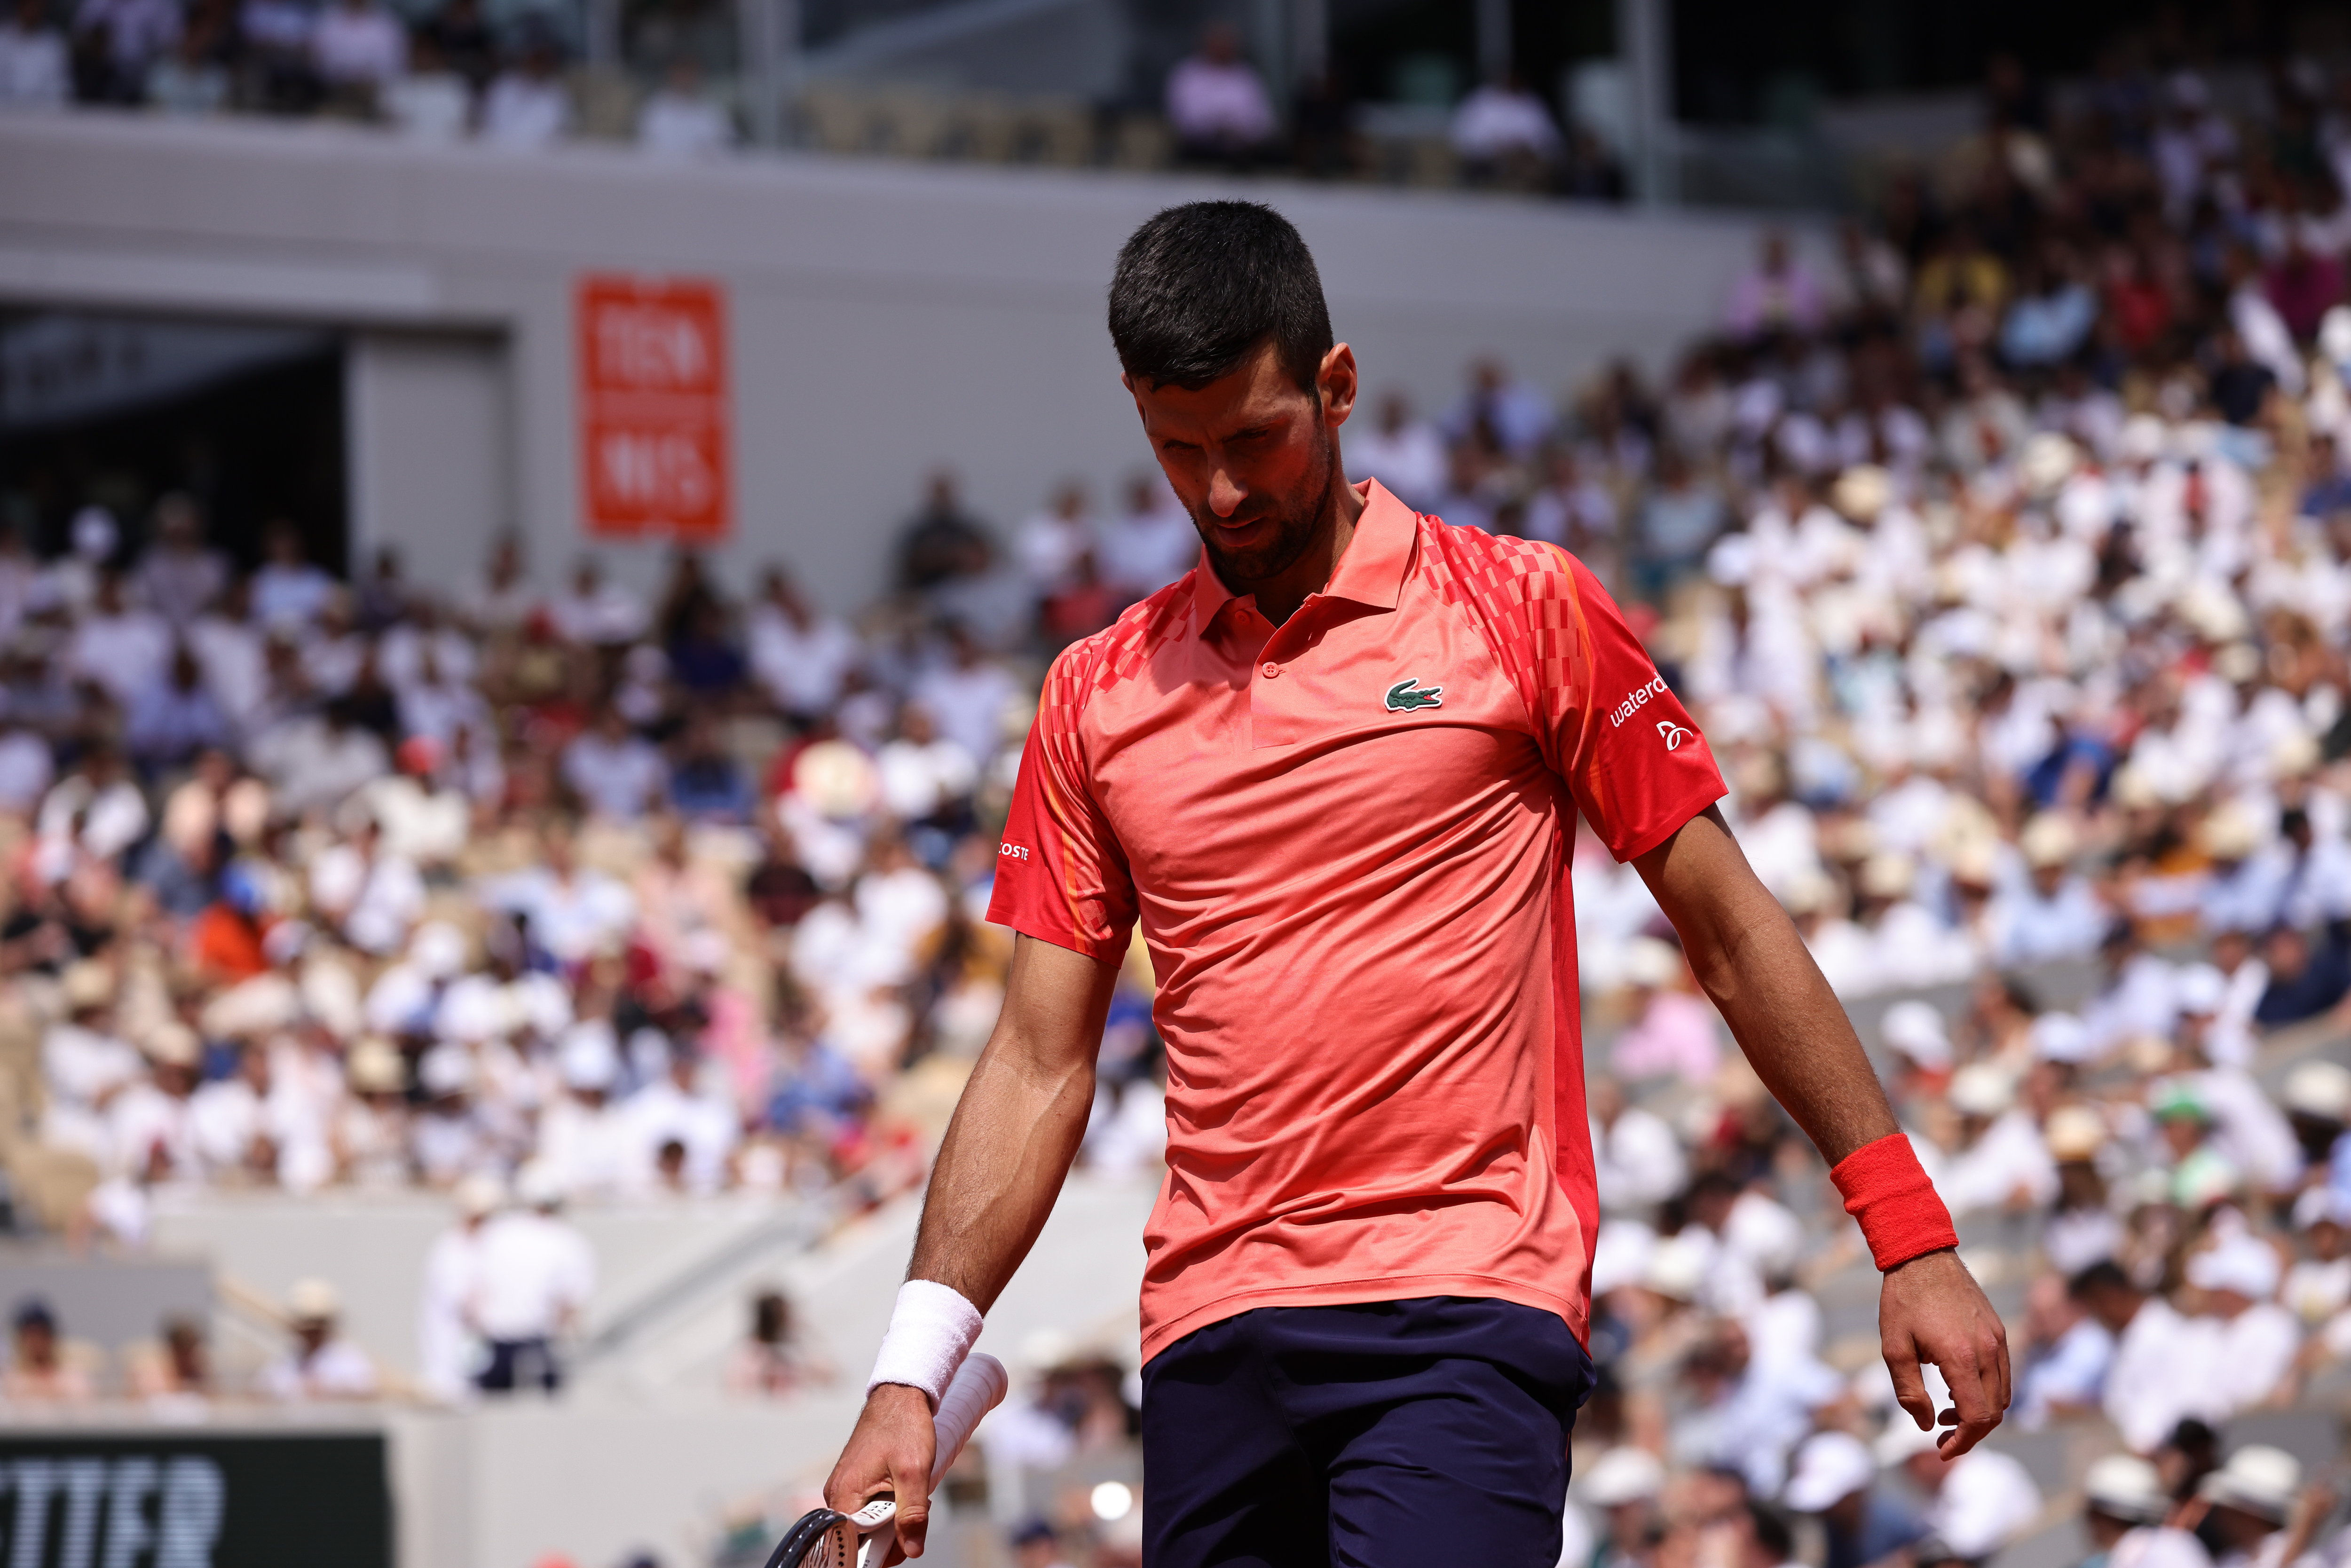 Novak Djokovic empoche la première manche. Photo : Le Parisien / Olivier Arandel